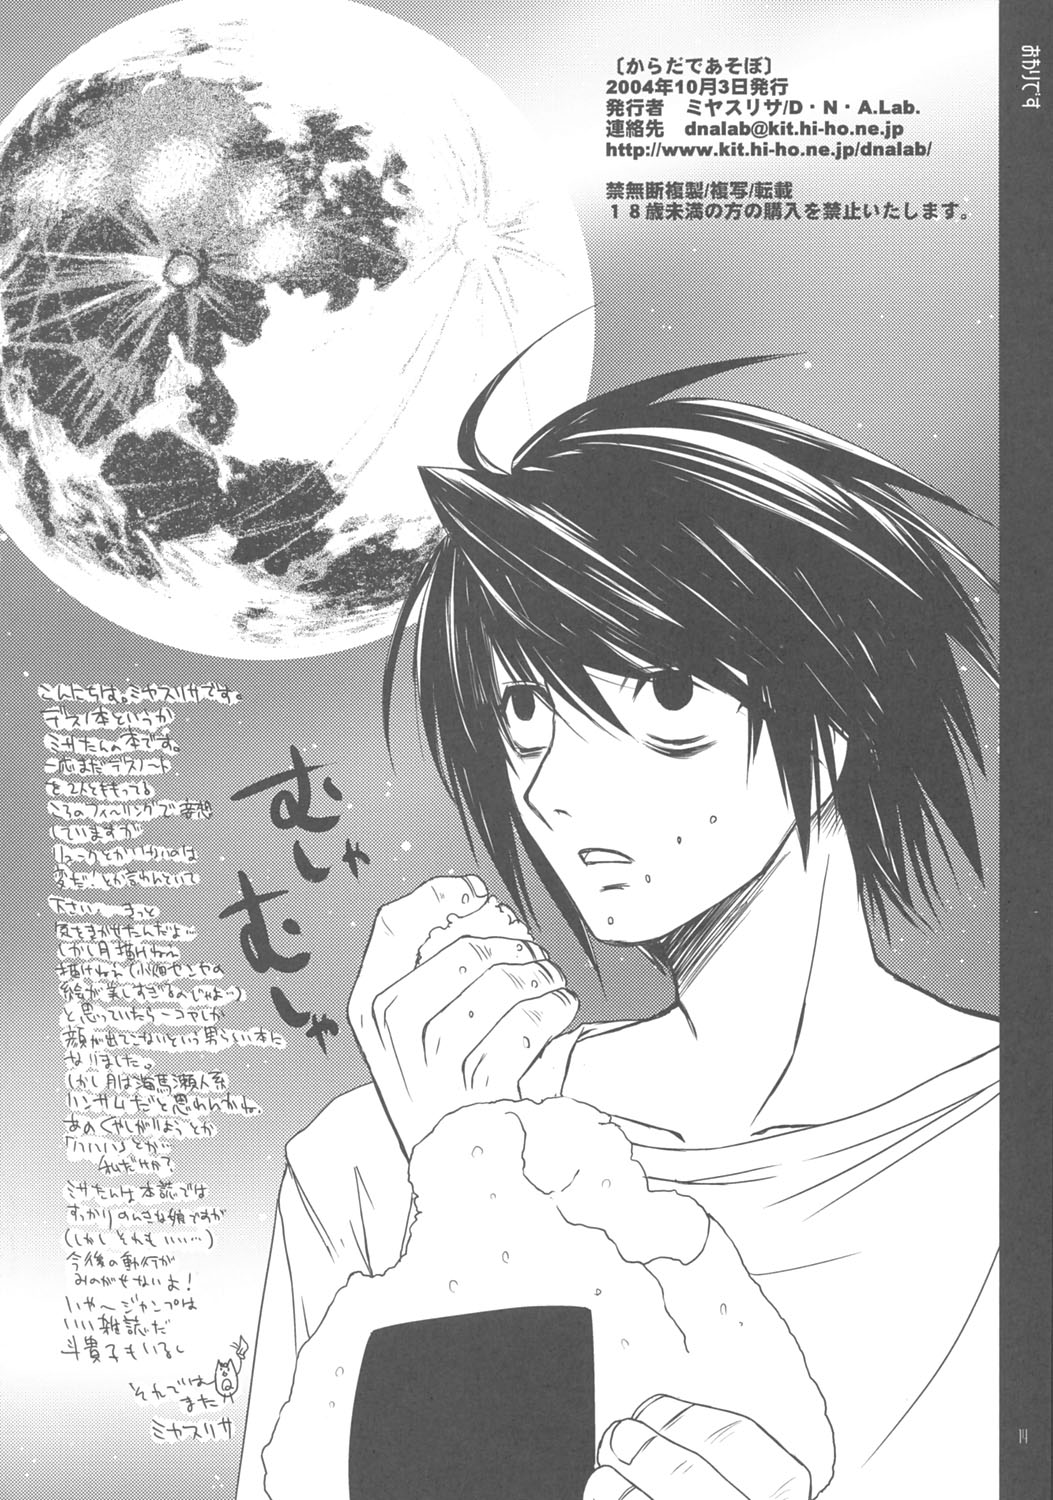 (CR36) [D.N.A.Lab. (Miyasu Risa)] Karada de Asobo (Death Note) page 13 full